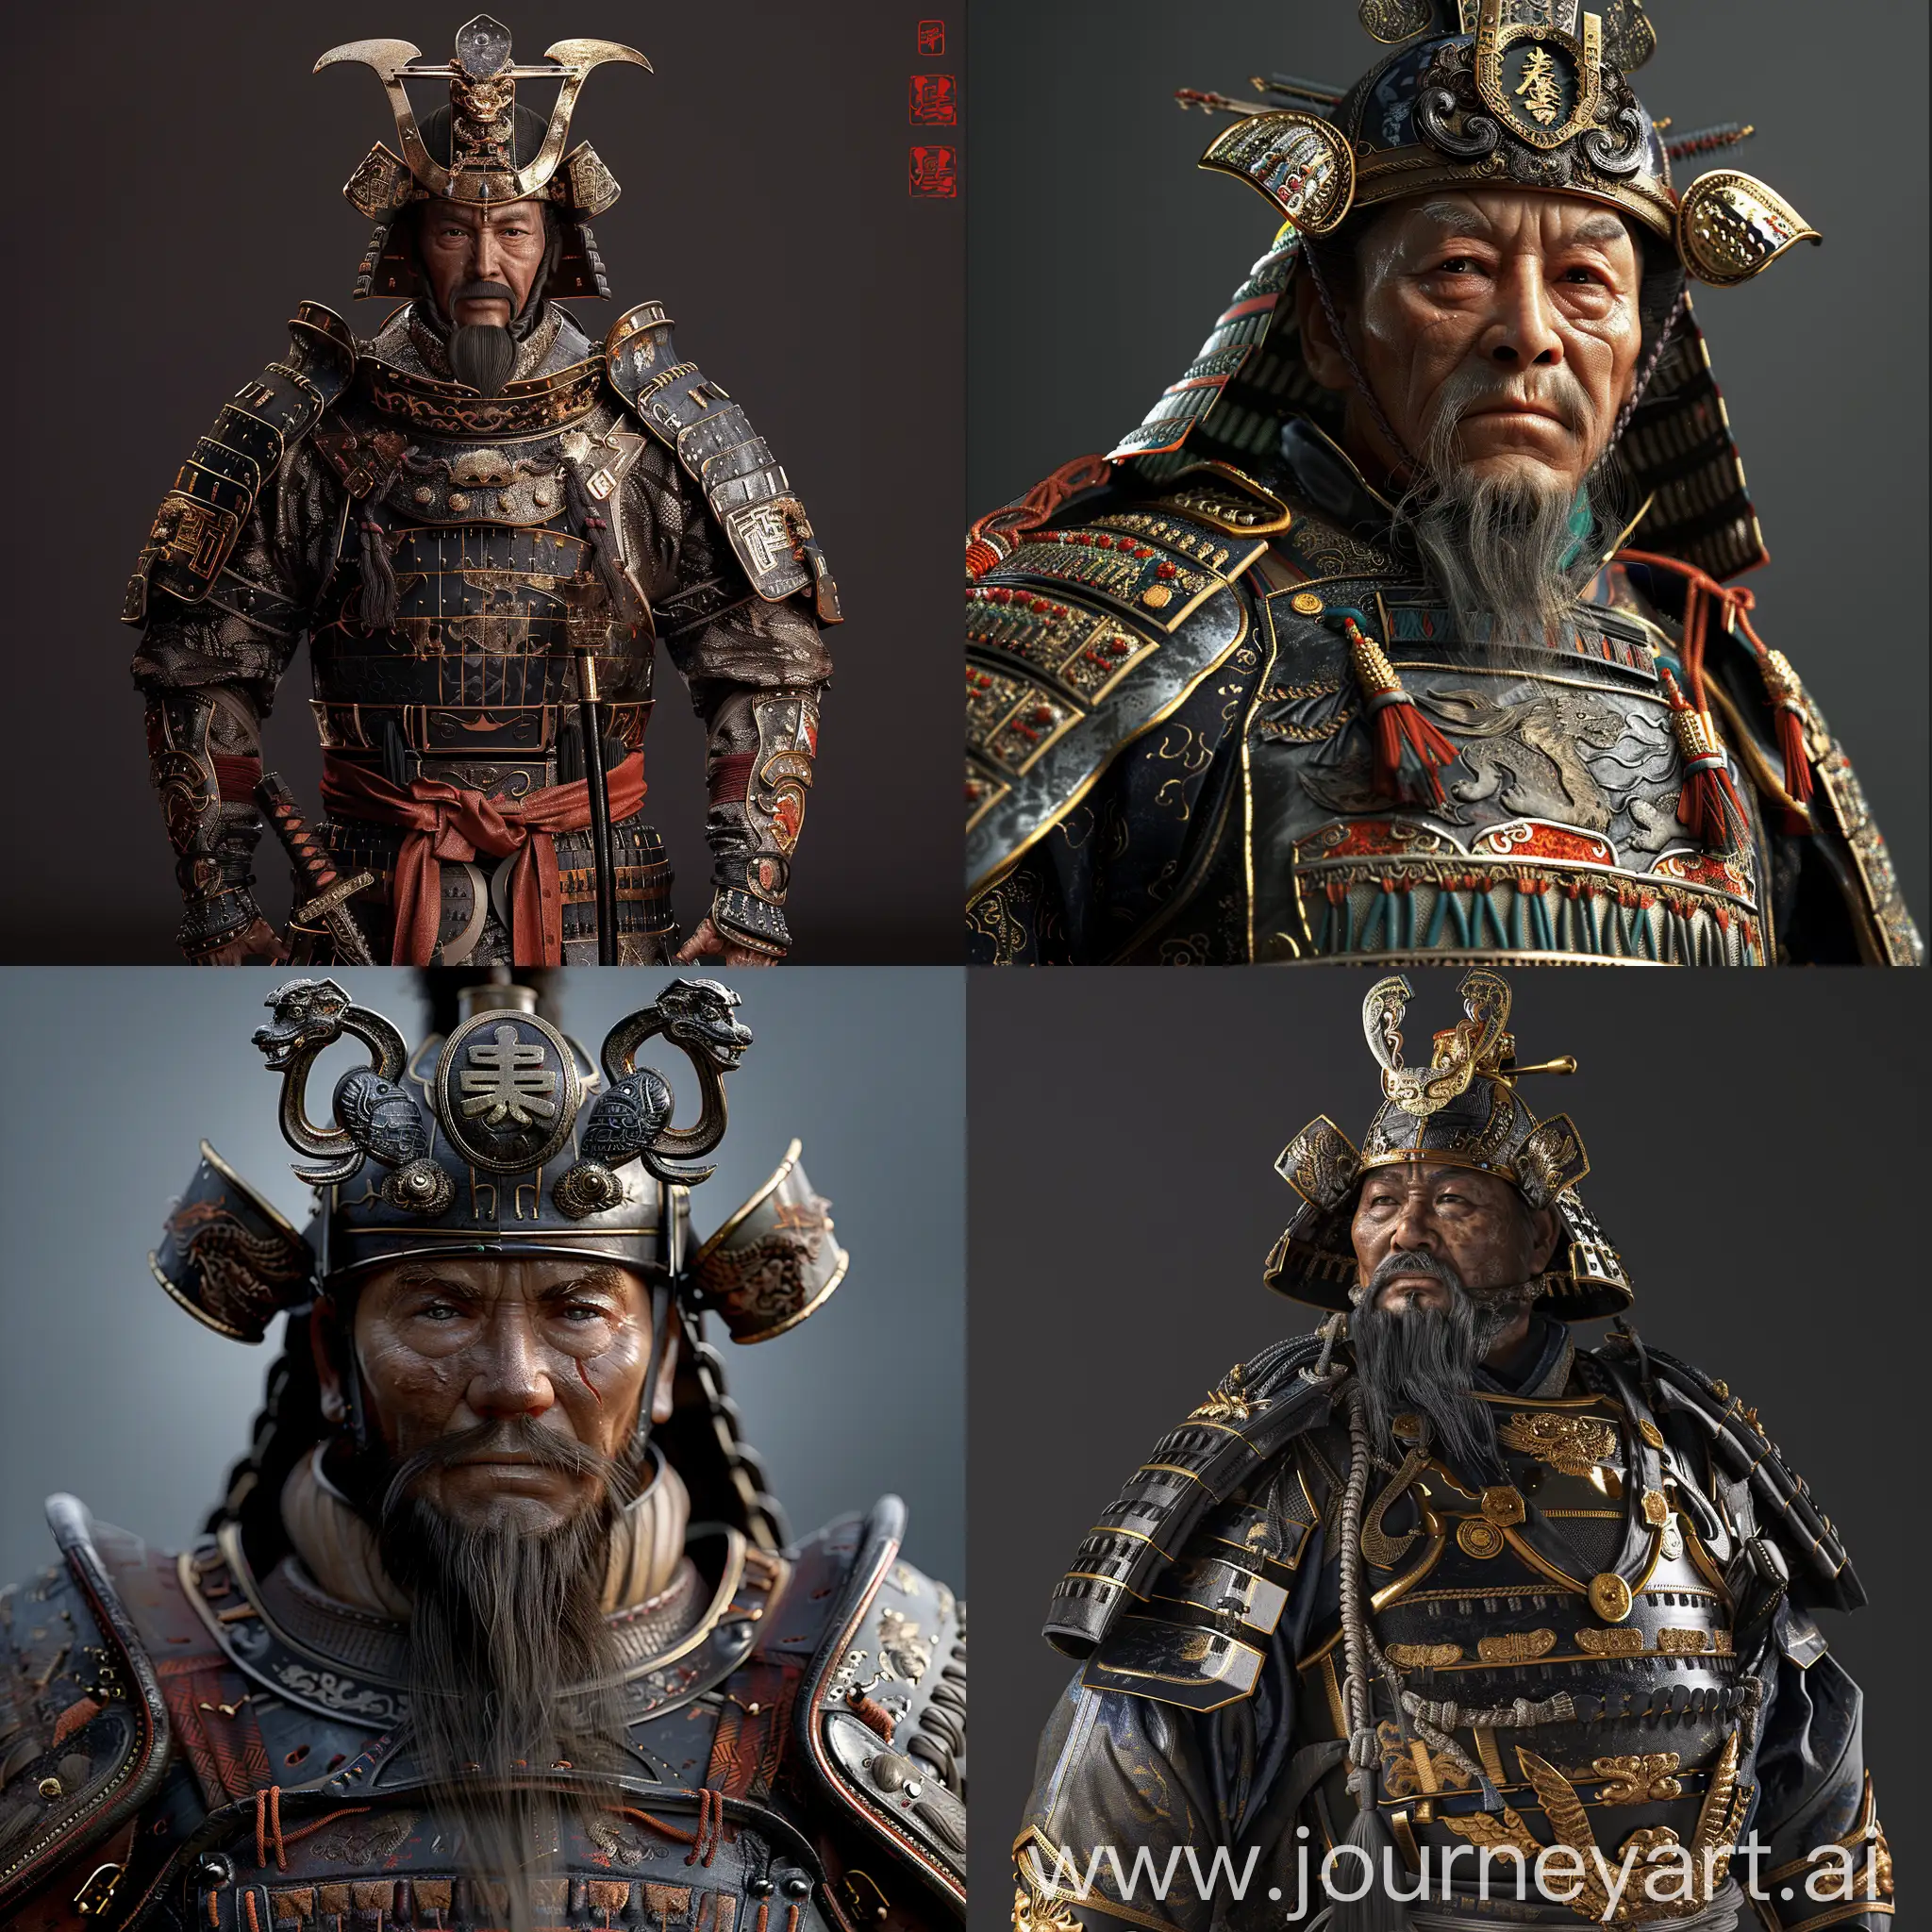 Majestic-Chinese-Emperor-in-Exquisite-Samurai-Armor